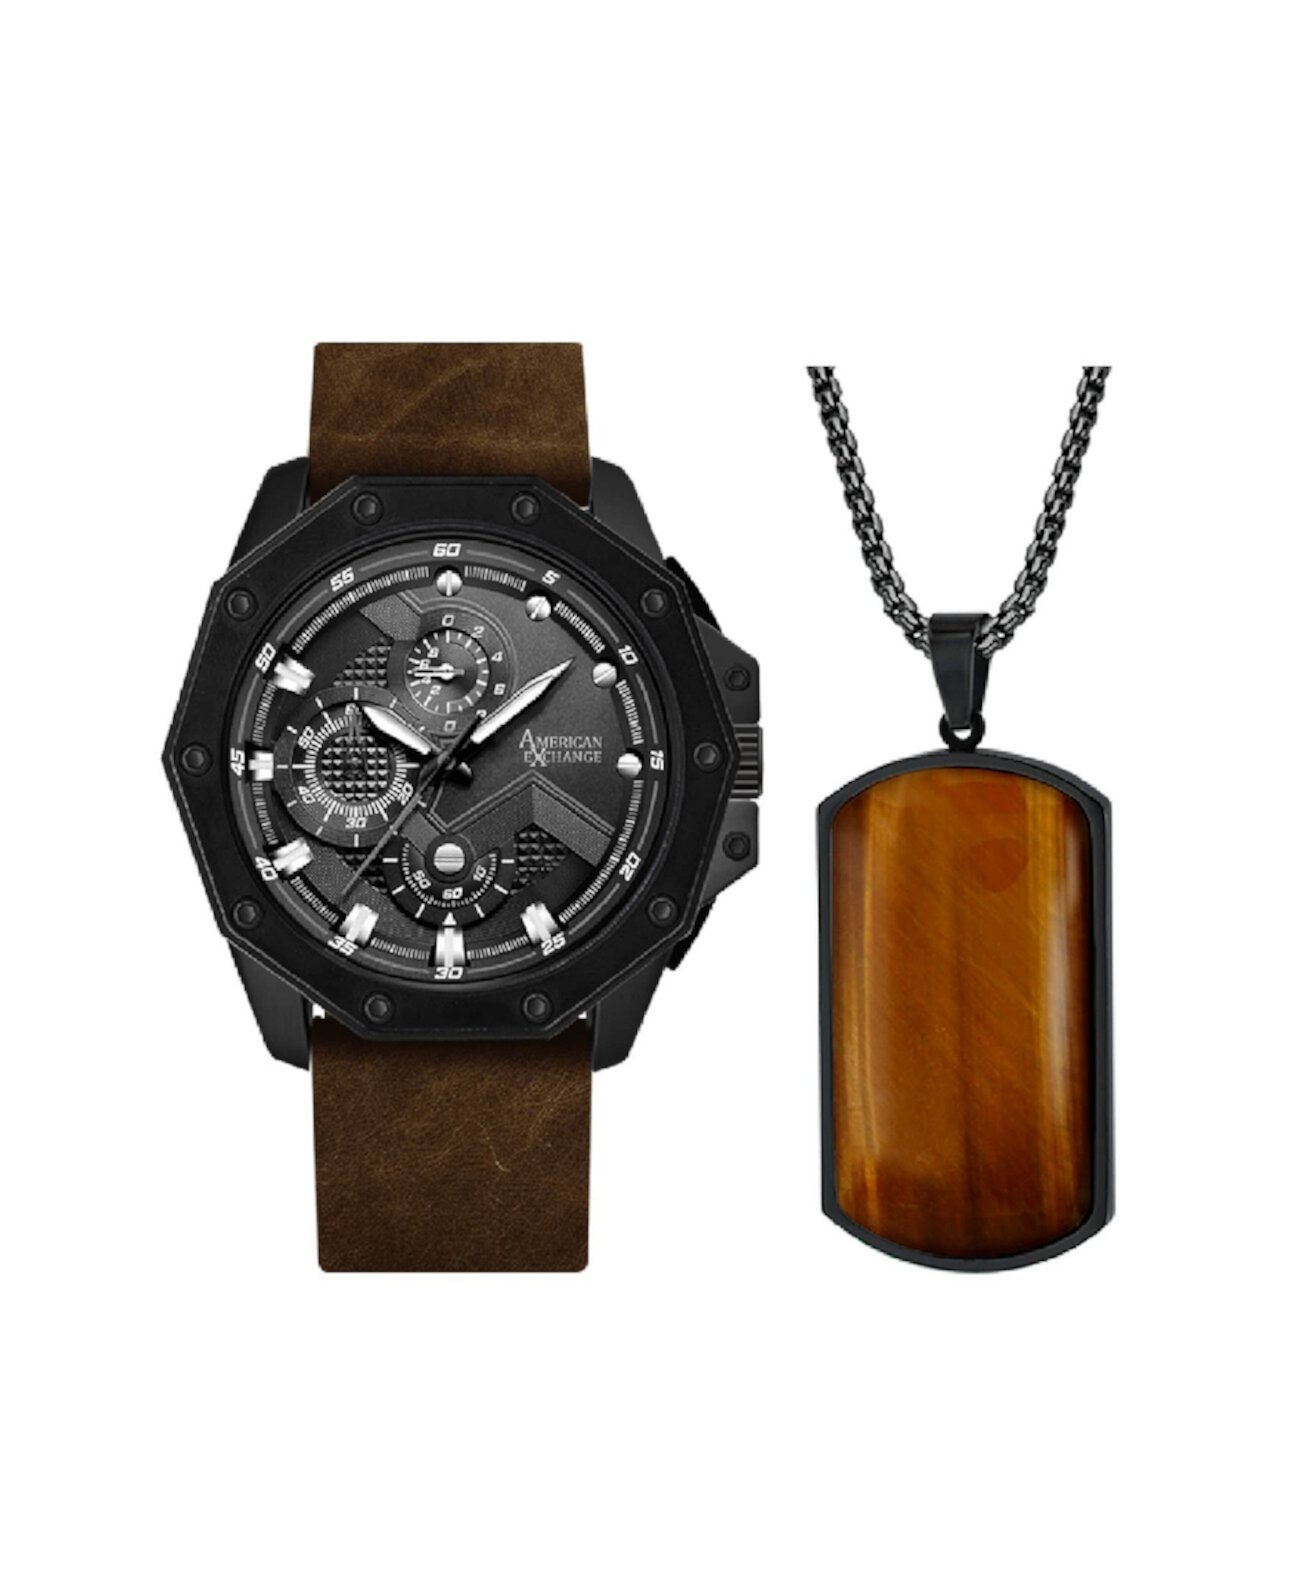 Мужские аналоговые кварцевые часы с тремя стрелками, матовый коричневый кожаный ремешок, 48 мм, подарочный набор American Exchange